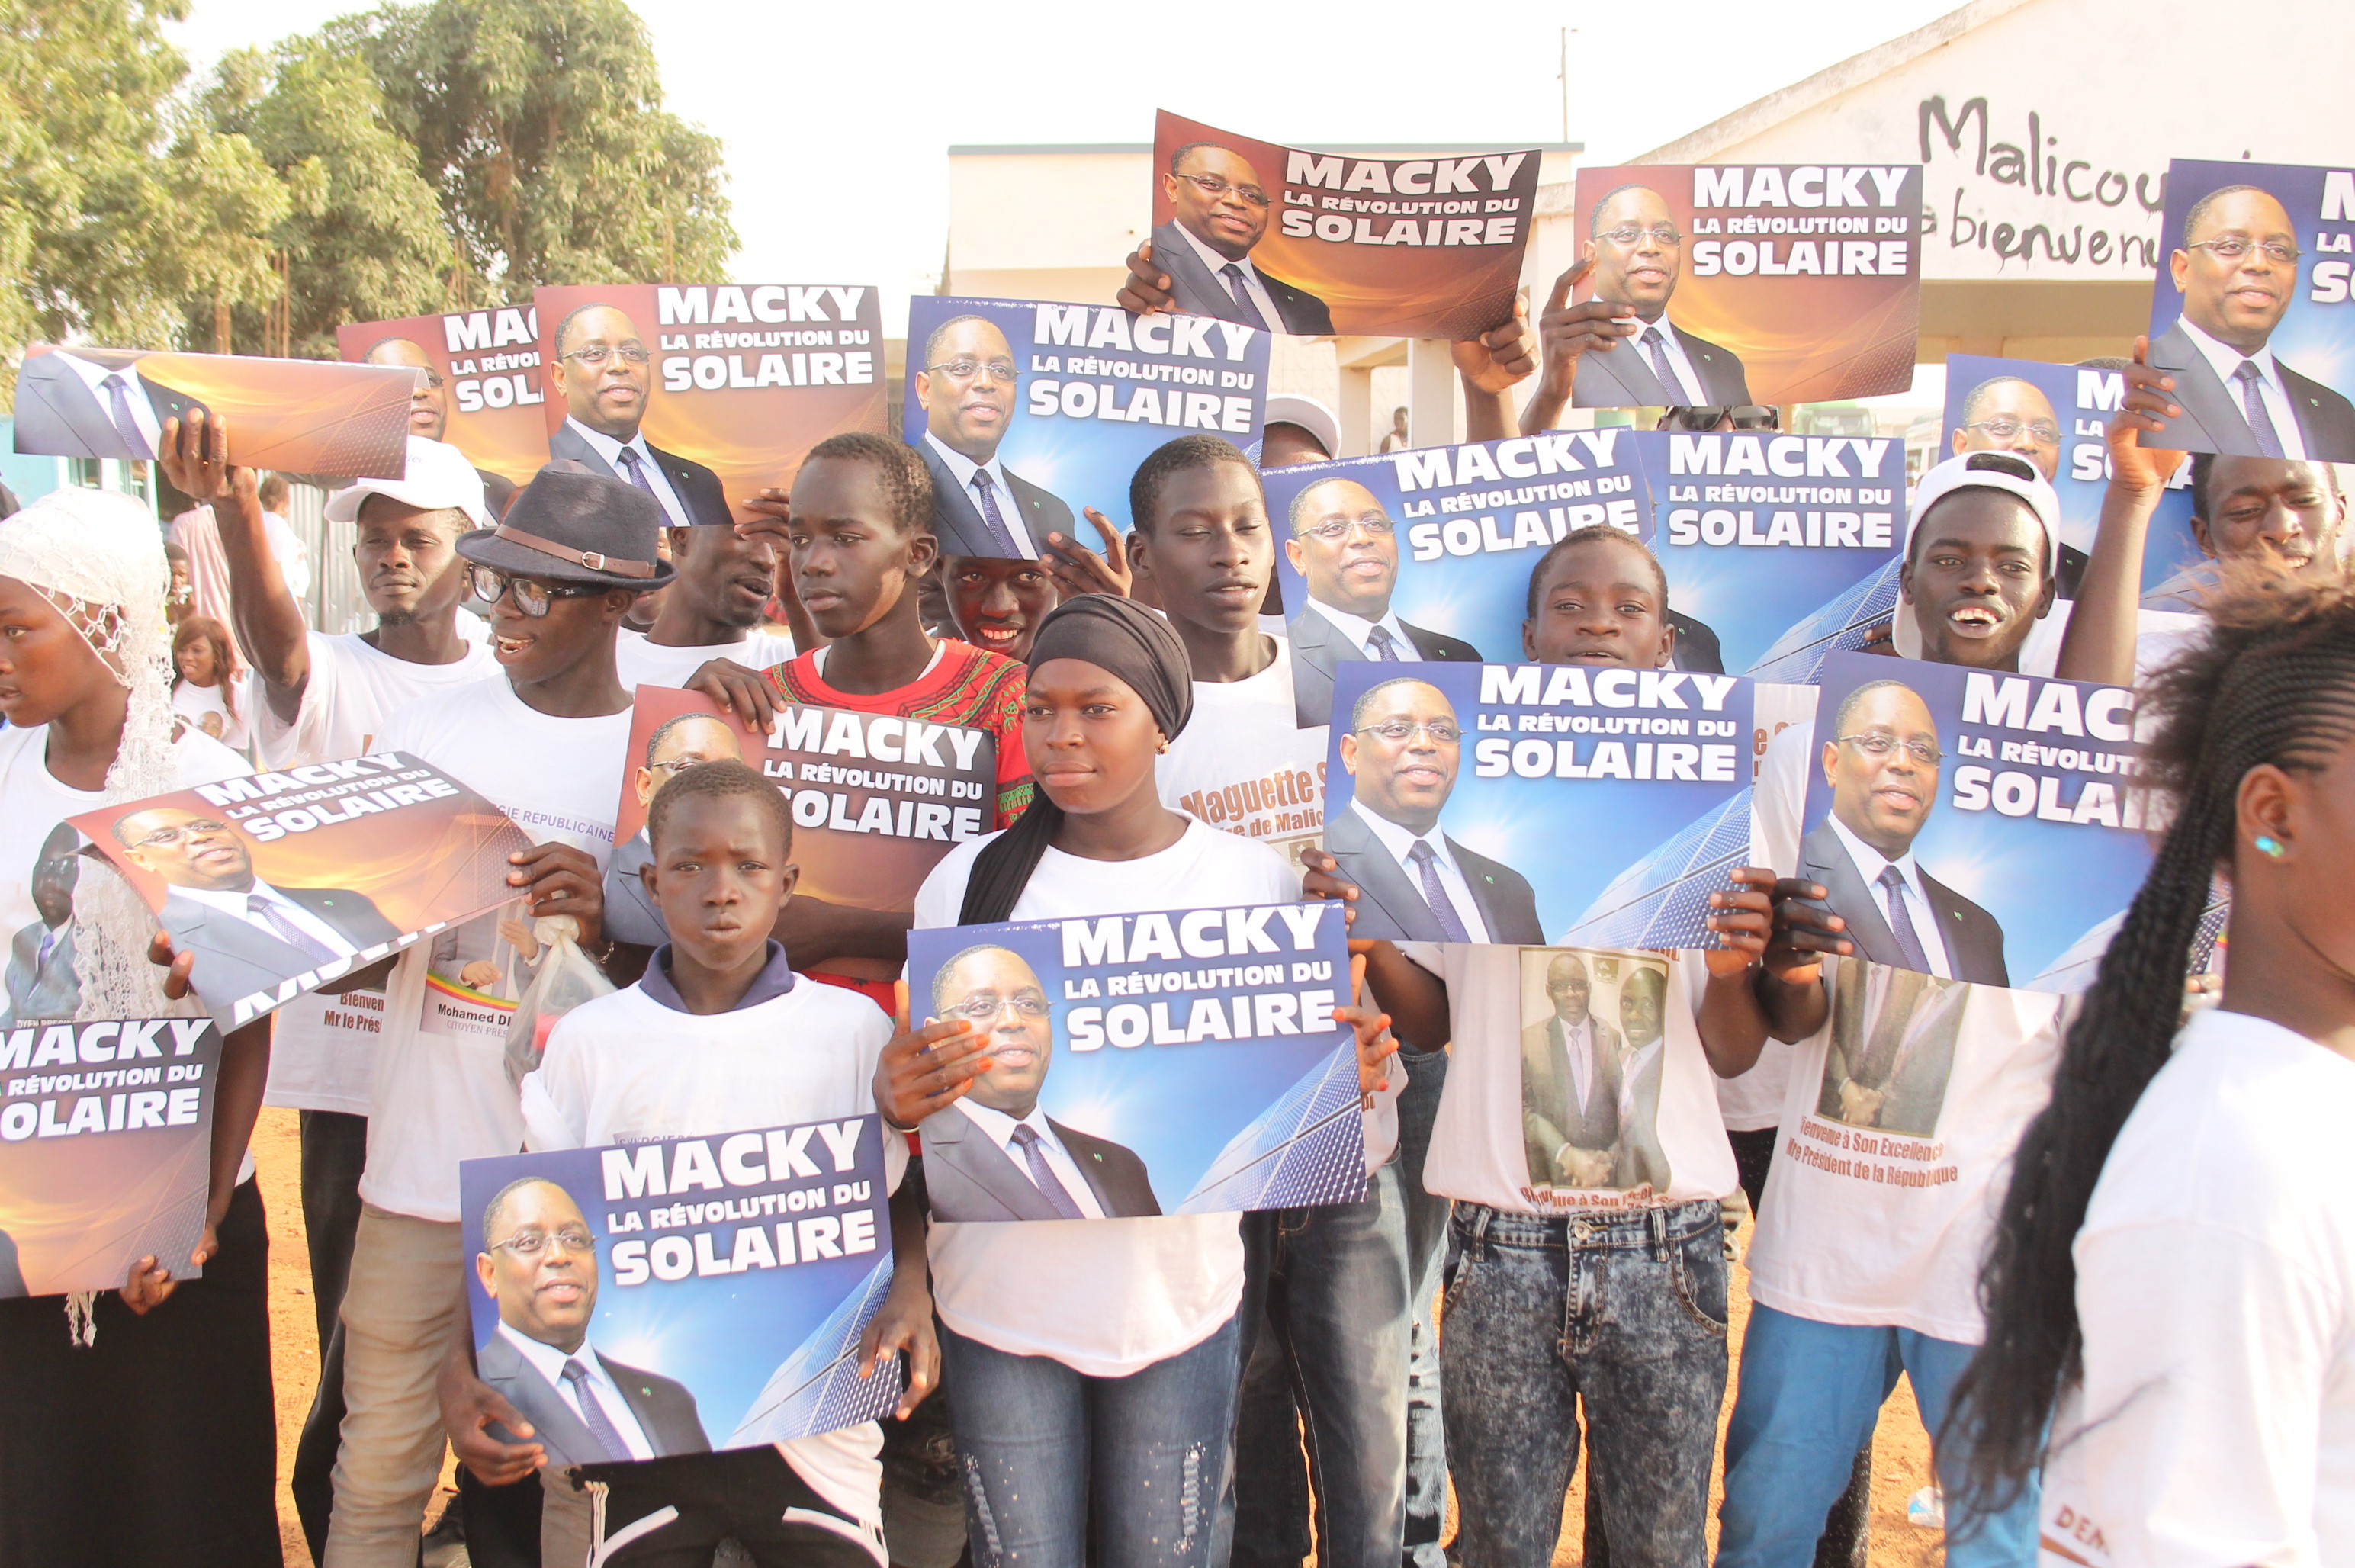 Des partisans de El Malick Seck à l'accueil du président Macky Sall à Malicounda